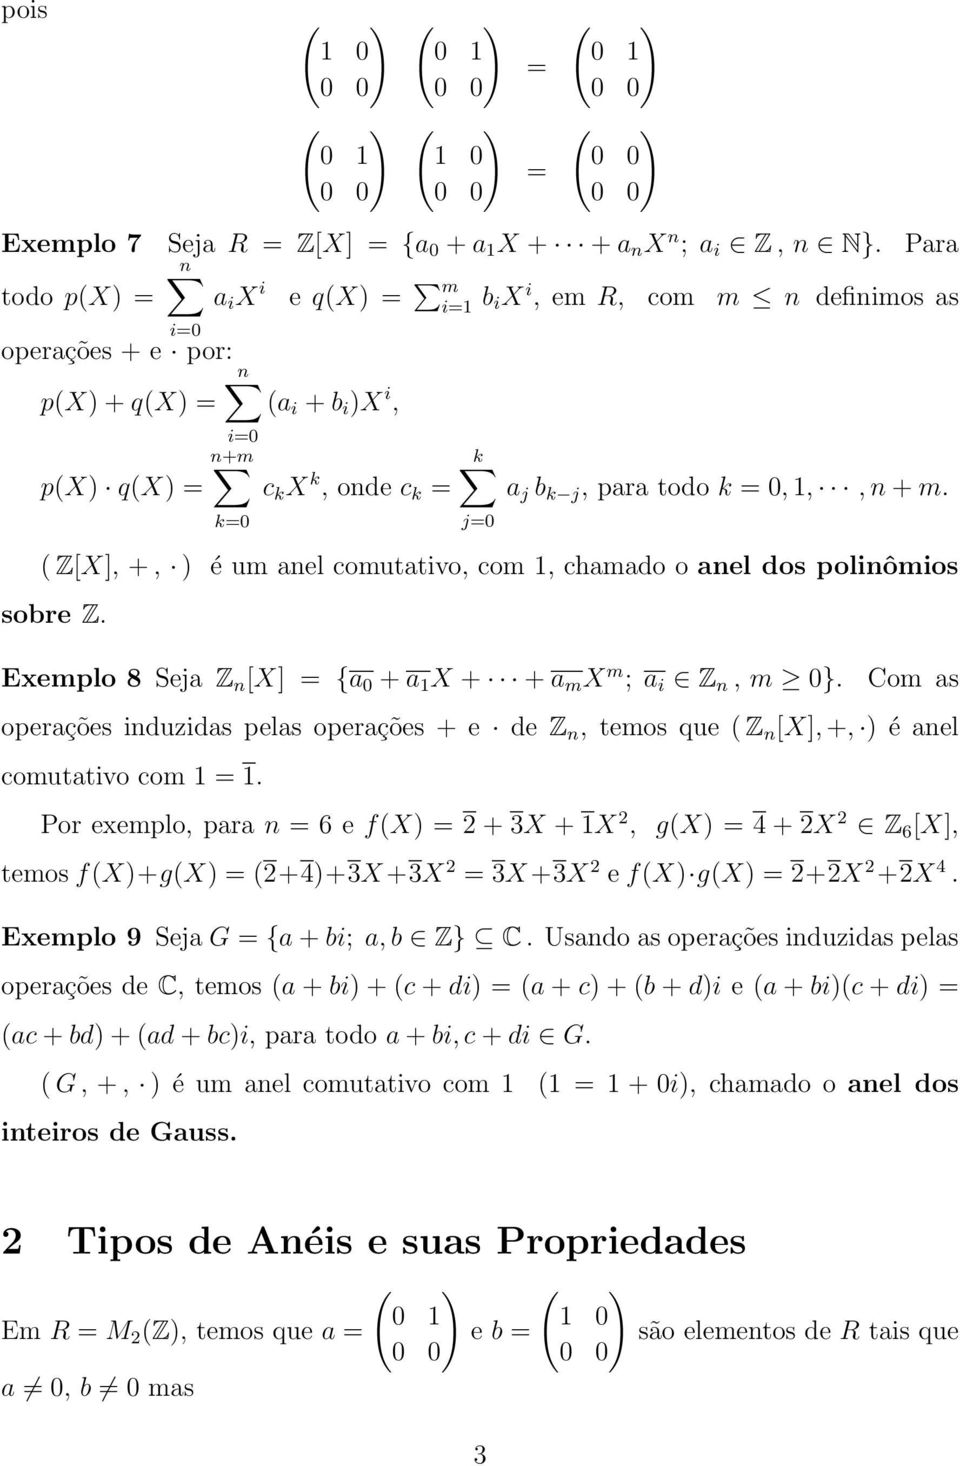 SMA Álgebra II Teoria de Anéis - Notas de Aulas - PDF Free Download